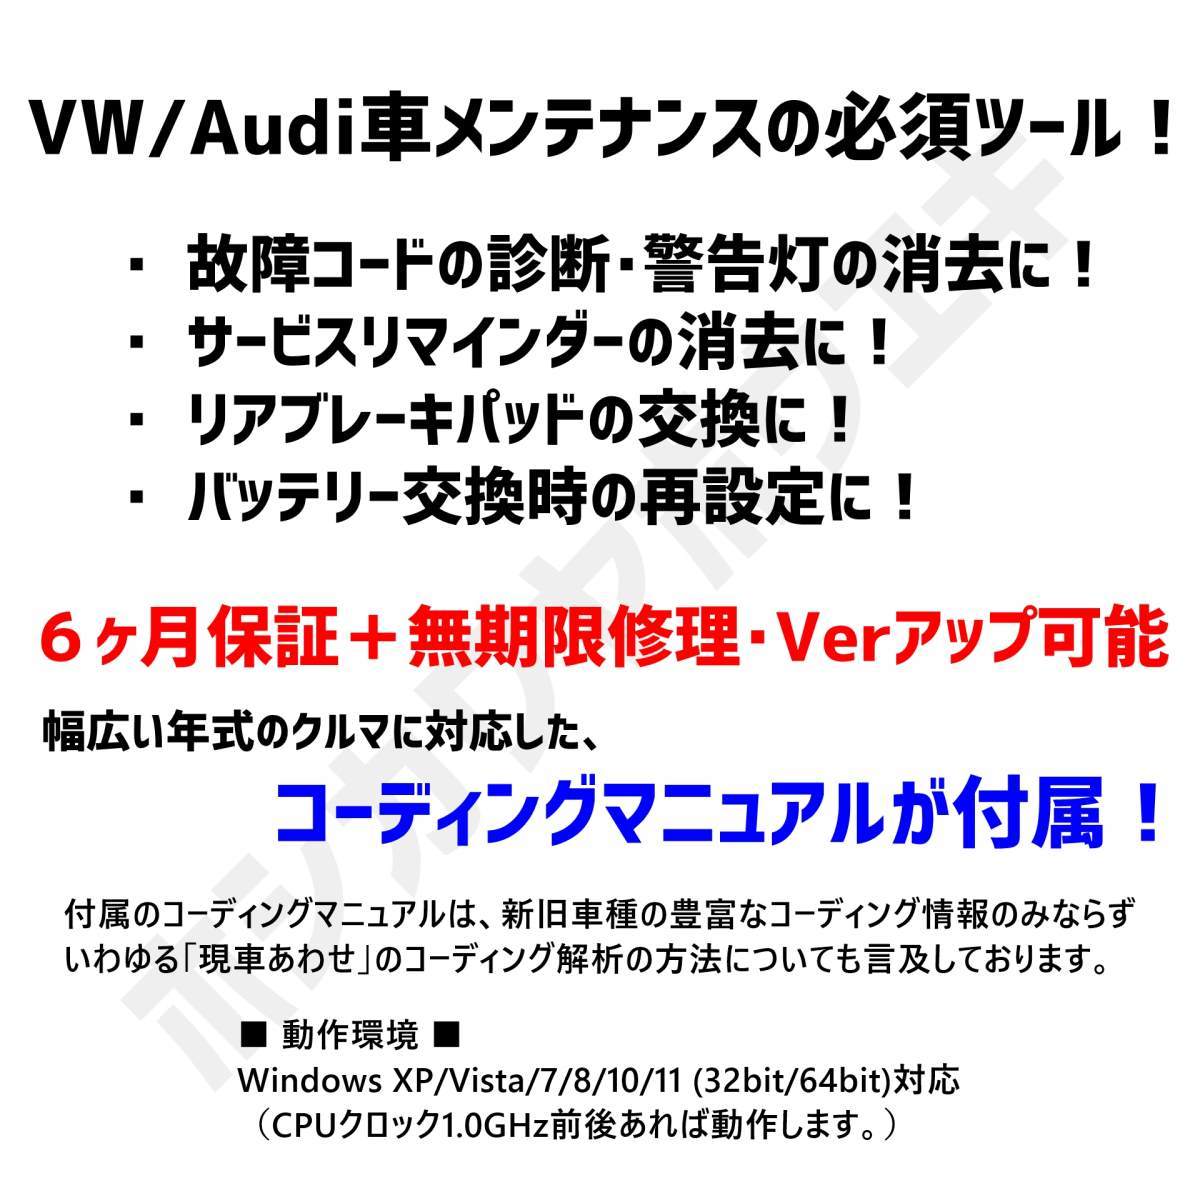 ◆ 【普及版23.3.1・保証付・送料無料】 VCDS 互換ケーブル HEX-V2タイプ 新コーディングマニュアル付 VW ゴルフ7.5 アウディ Audi A3 Q2_画像2